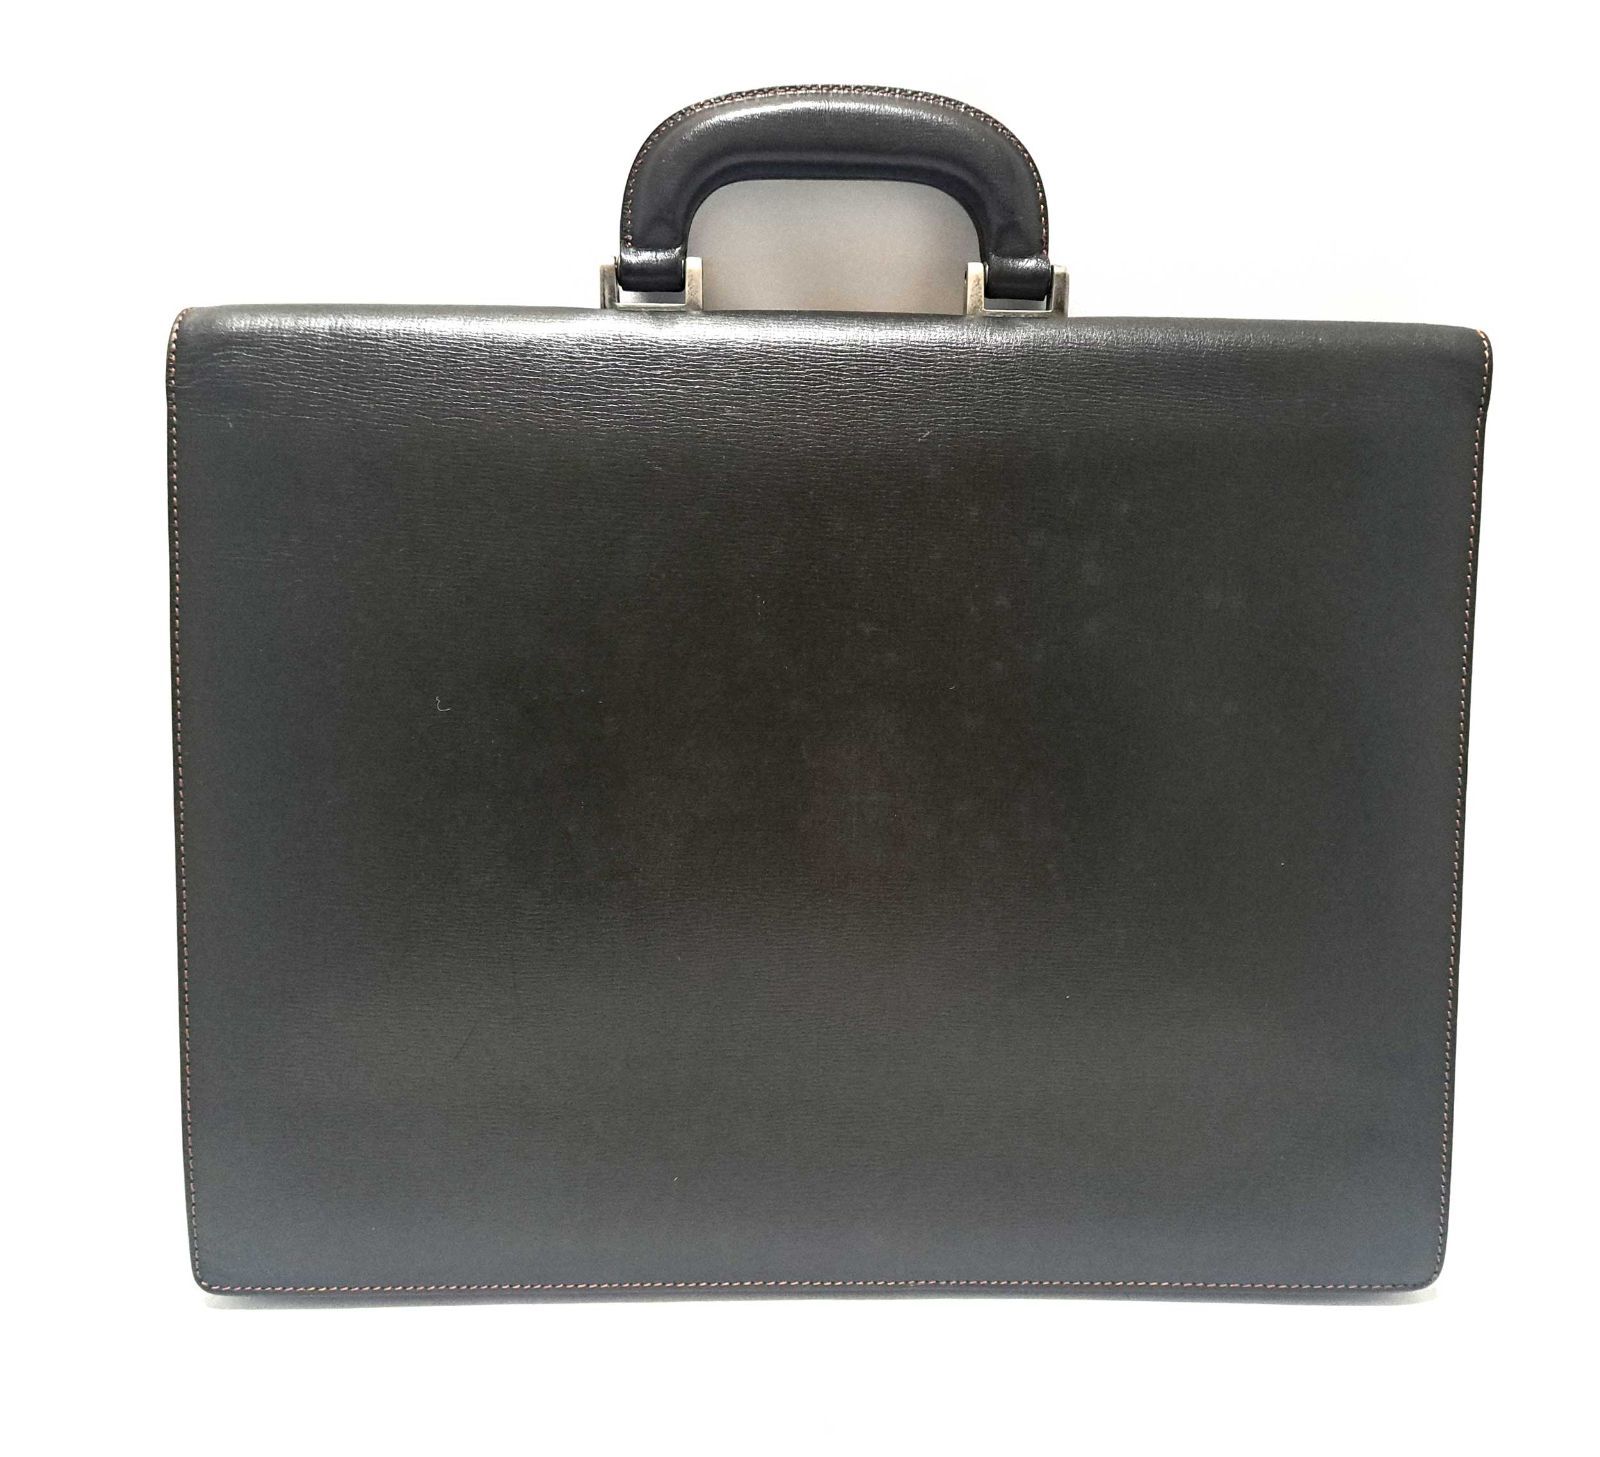 ダンヒル♡ブリーフケース・ビジネスバッグ♡ブラック黒×本革レザー/会社・書類鞄